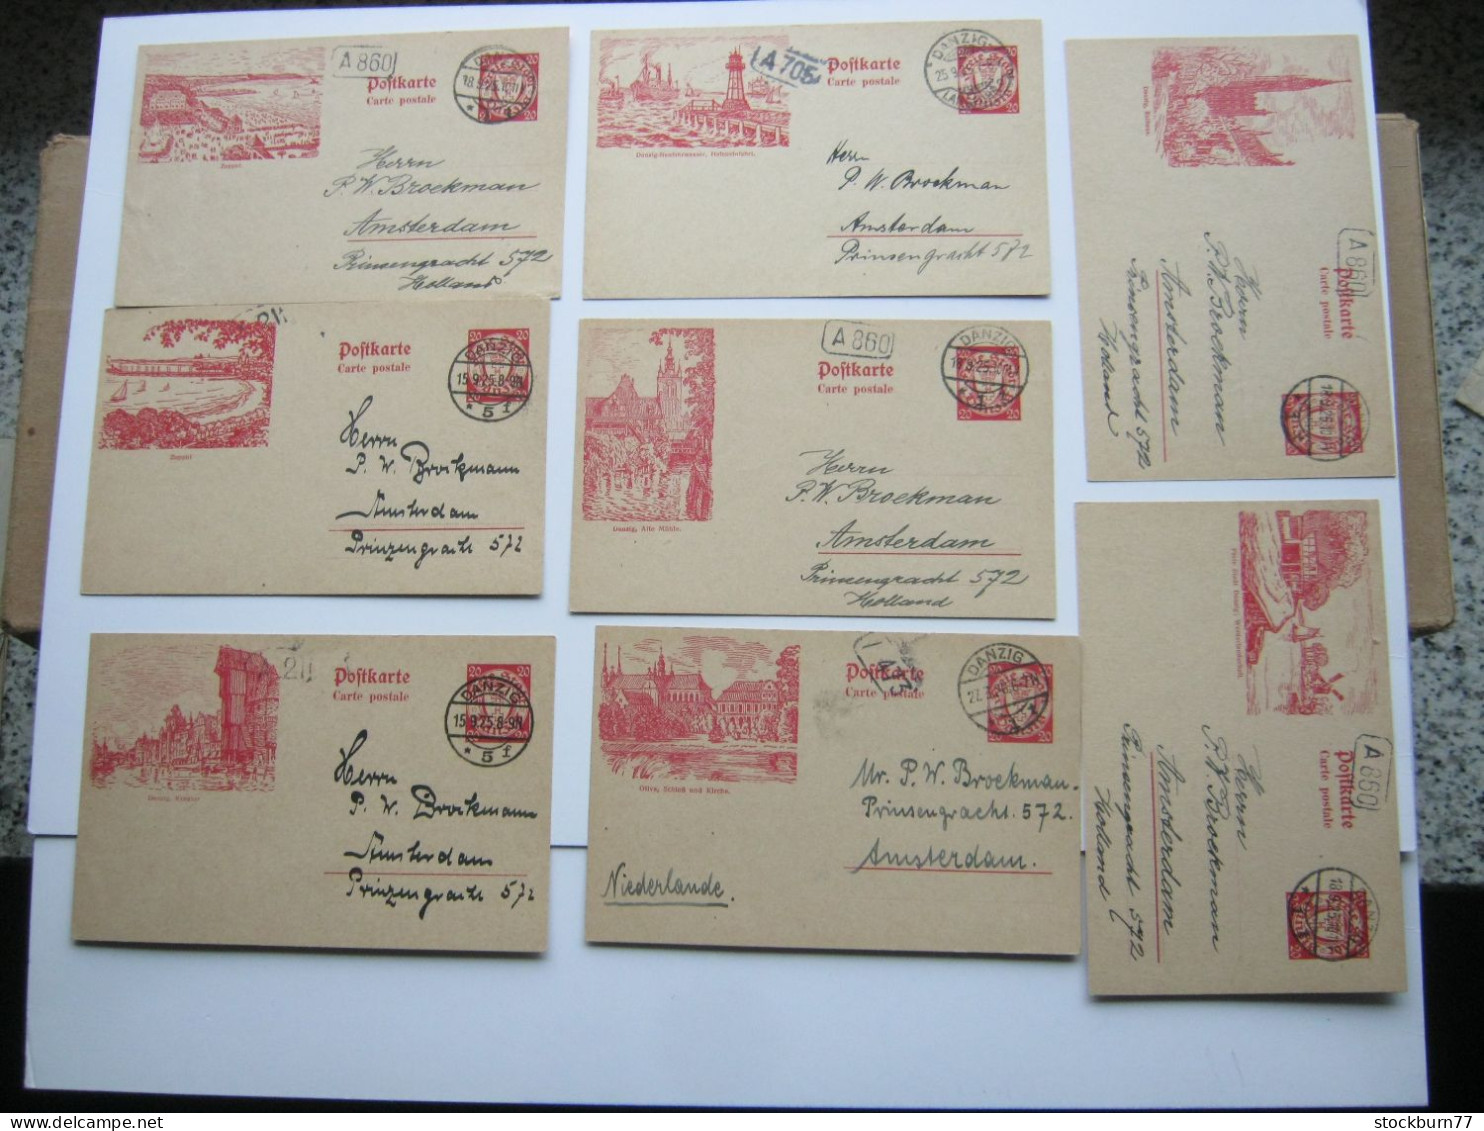 DANZIG ,    1925 , 20 Pfg. Bildganzsache , 8 Karten Ins Ausland Verschickt ( Niederlande), Sehr Selten ! - Entiers Postaux